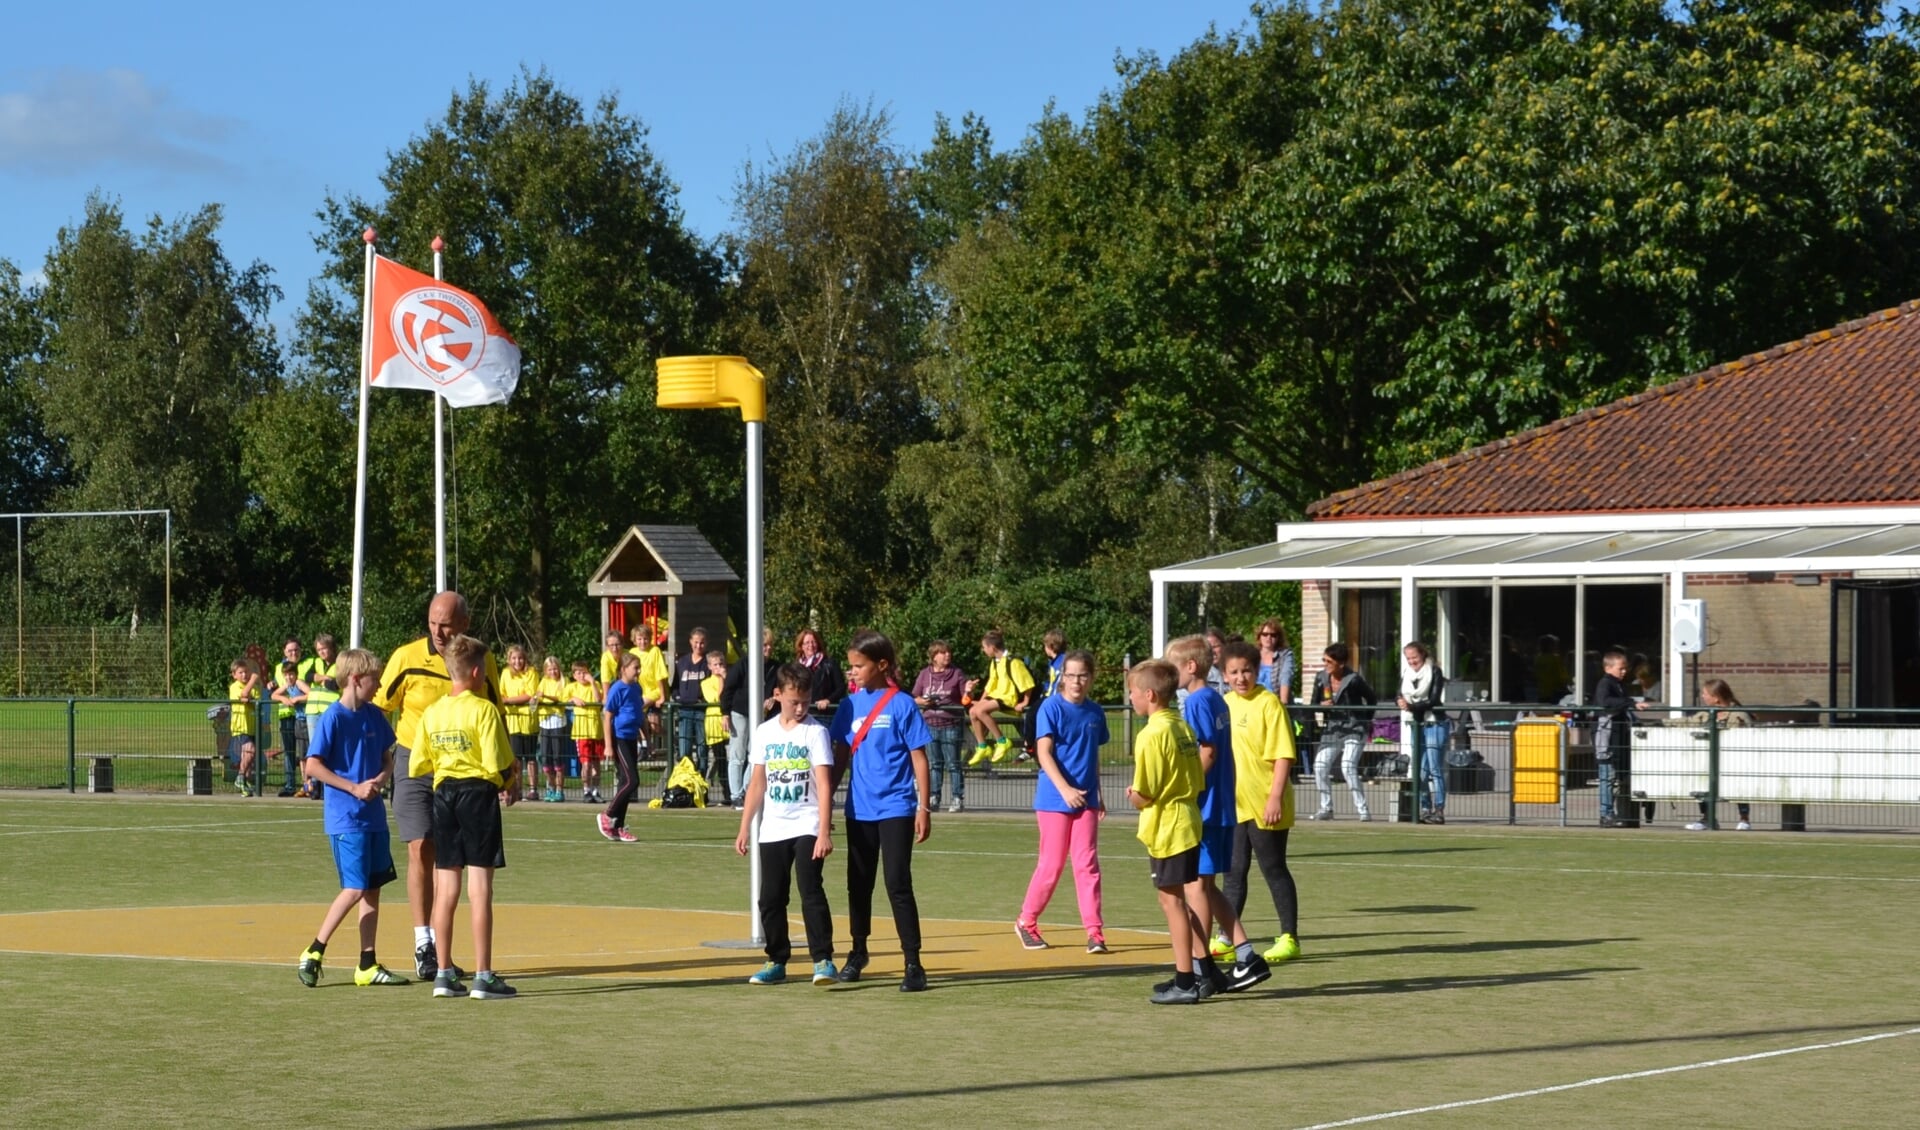 De finale ging tussen het blauw uit Maartensdijk en het geel uit Westbroek. (foto Hester Ploeg)